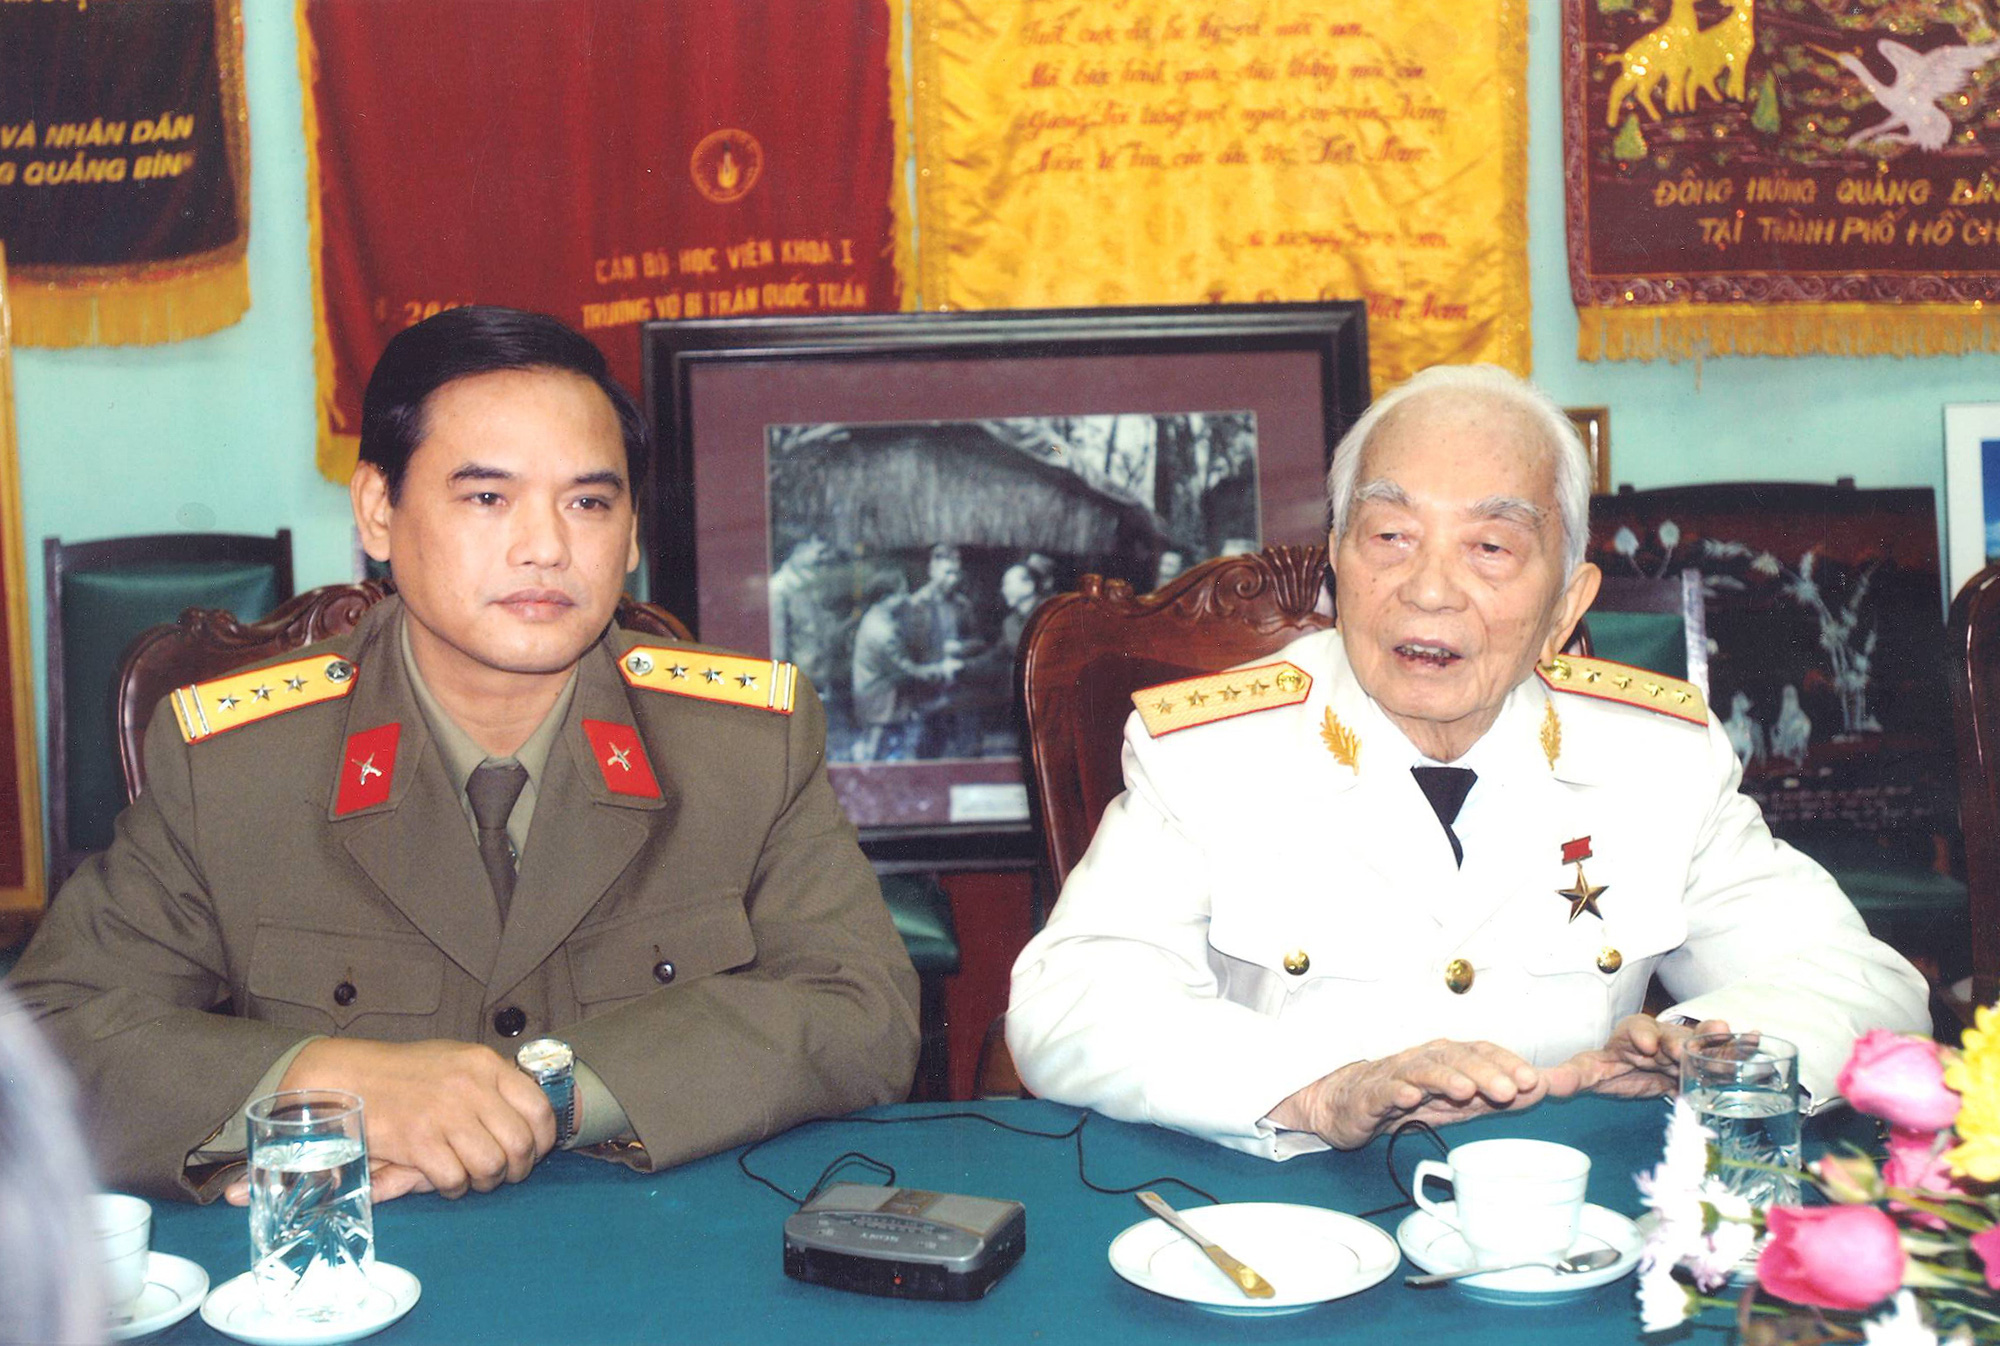 Đại tướng Võ Nguyên Giáp và sự quan tâm thúc đẩy quan hệ quốc phòng Việt – Mỹ - Ảnh 1.